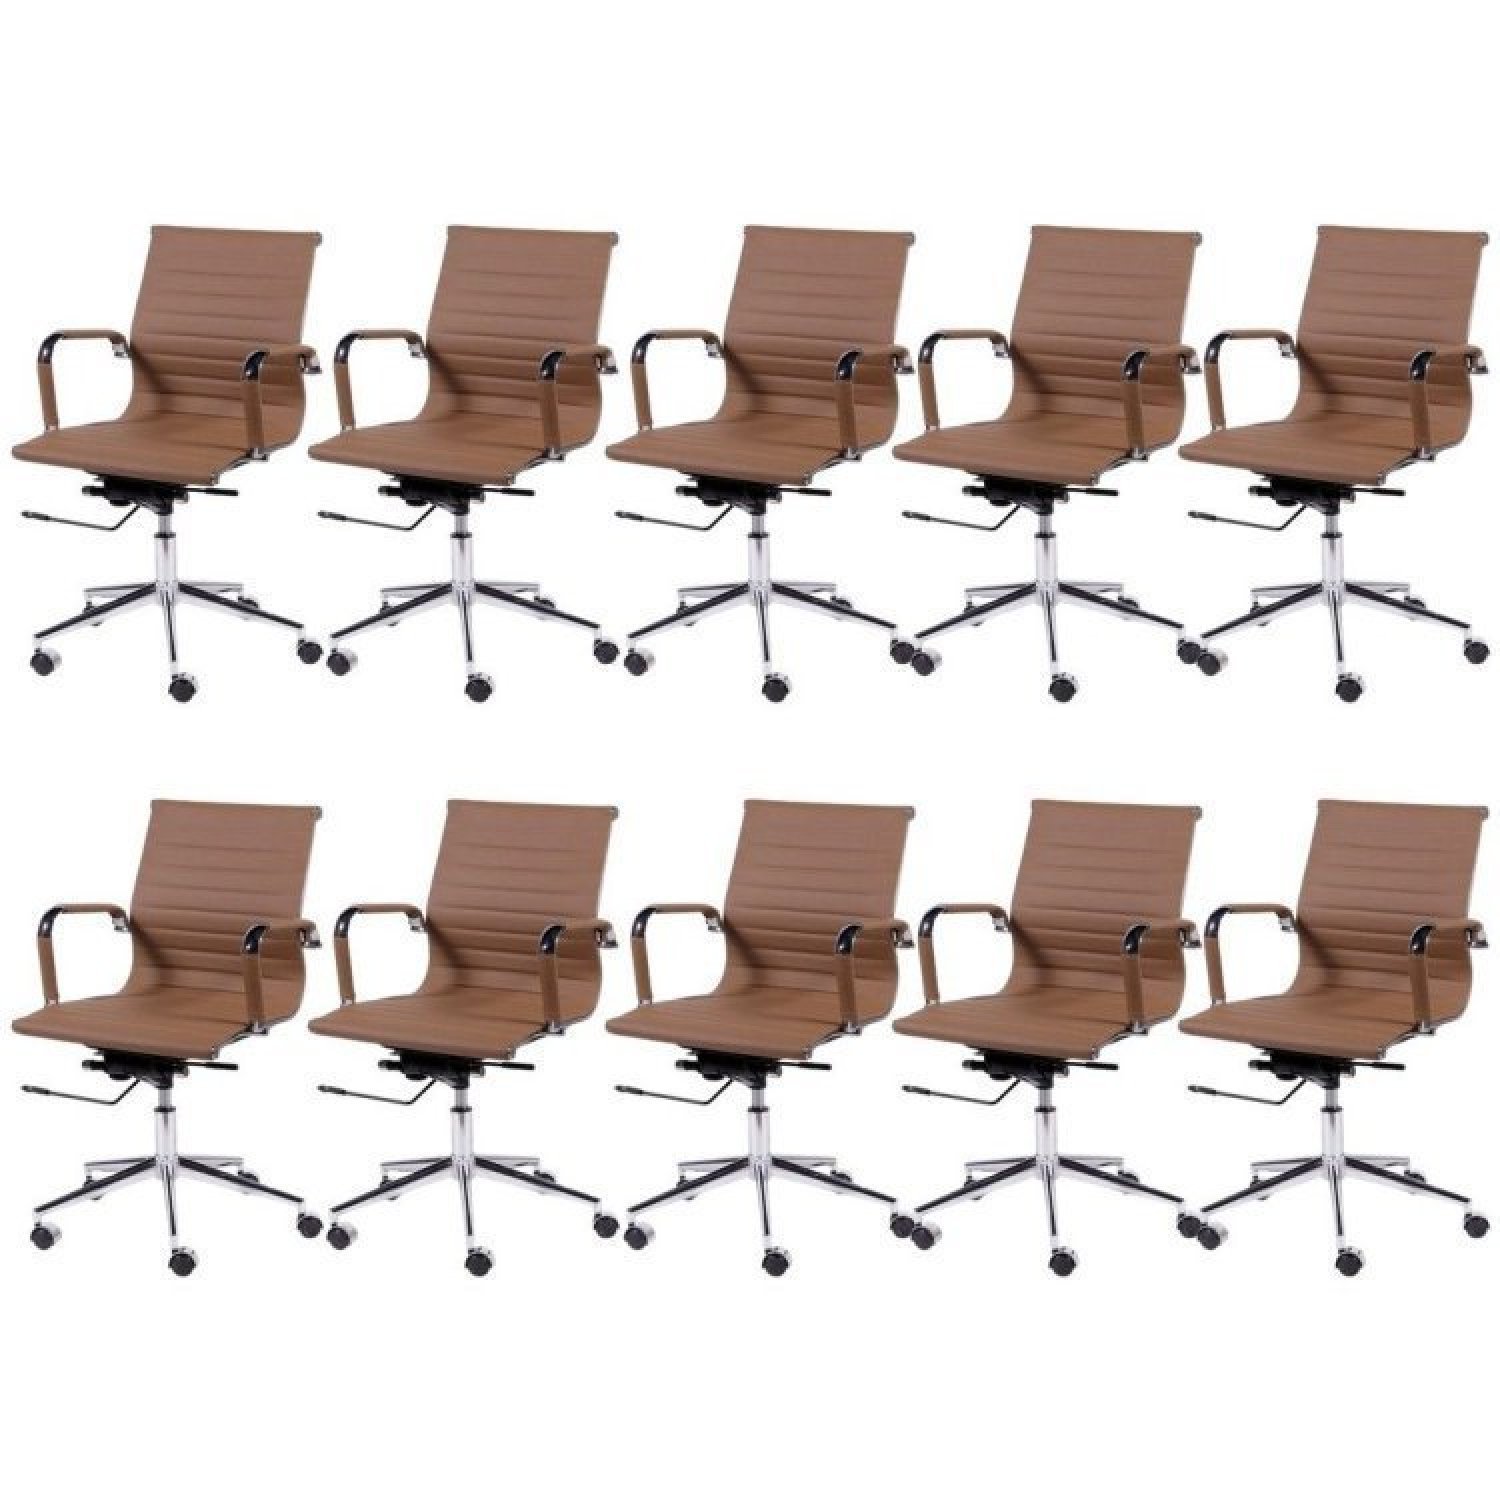 Kit 10 Cadeiras para Escritório Diretor Esteirinha com Relax Corino 3301 OR Design - 1